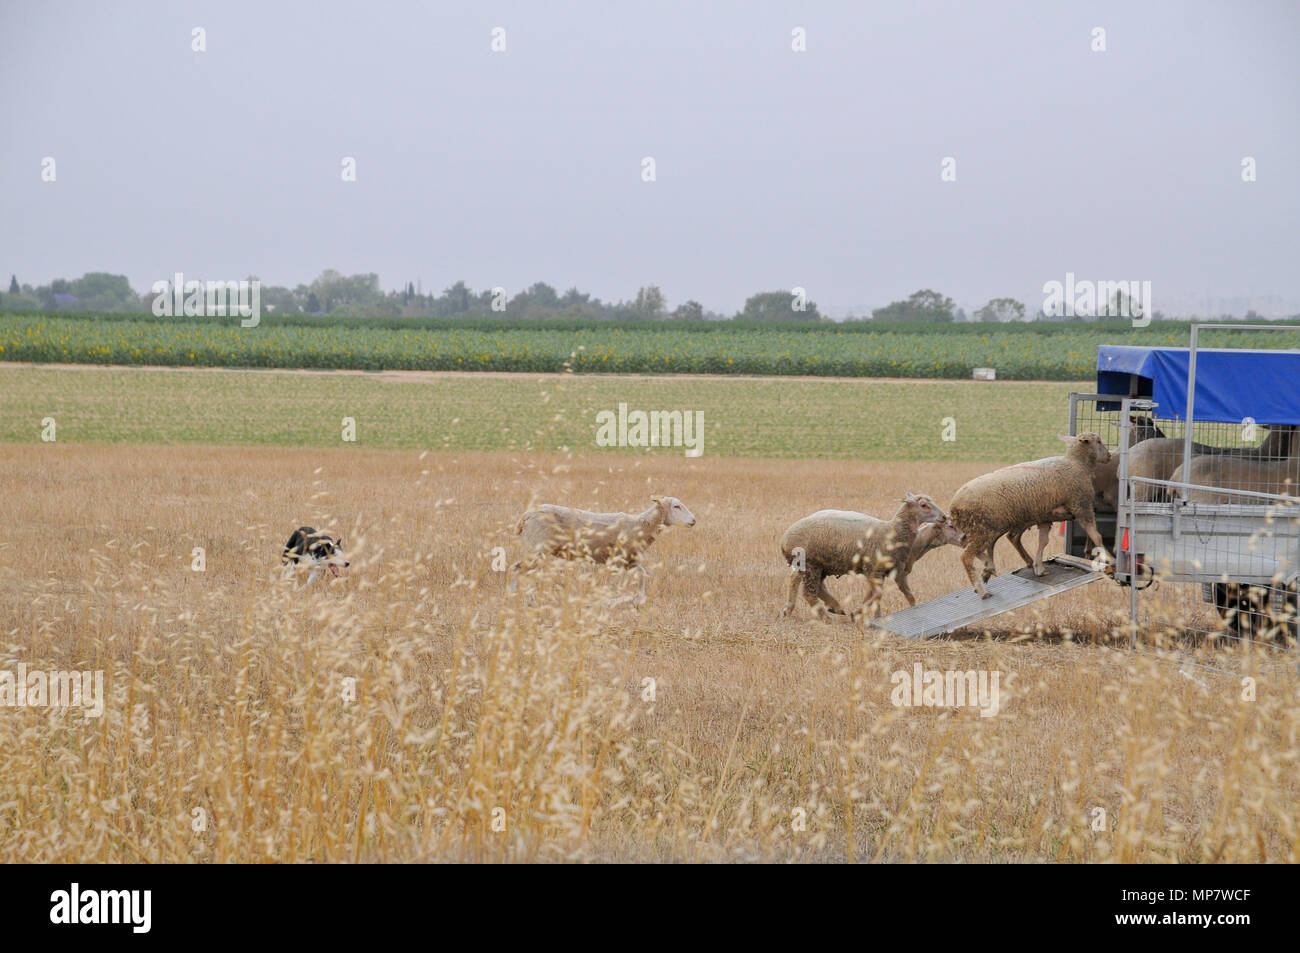 Ovejero rebaños de ovejas en un vagón de un conjunto de seis imágenes Foto de stock